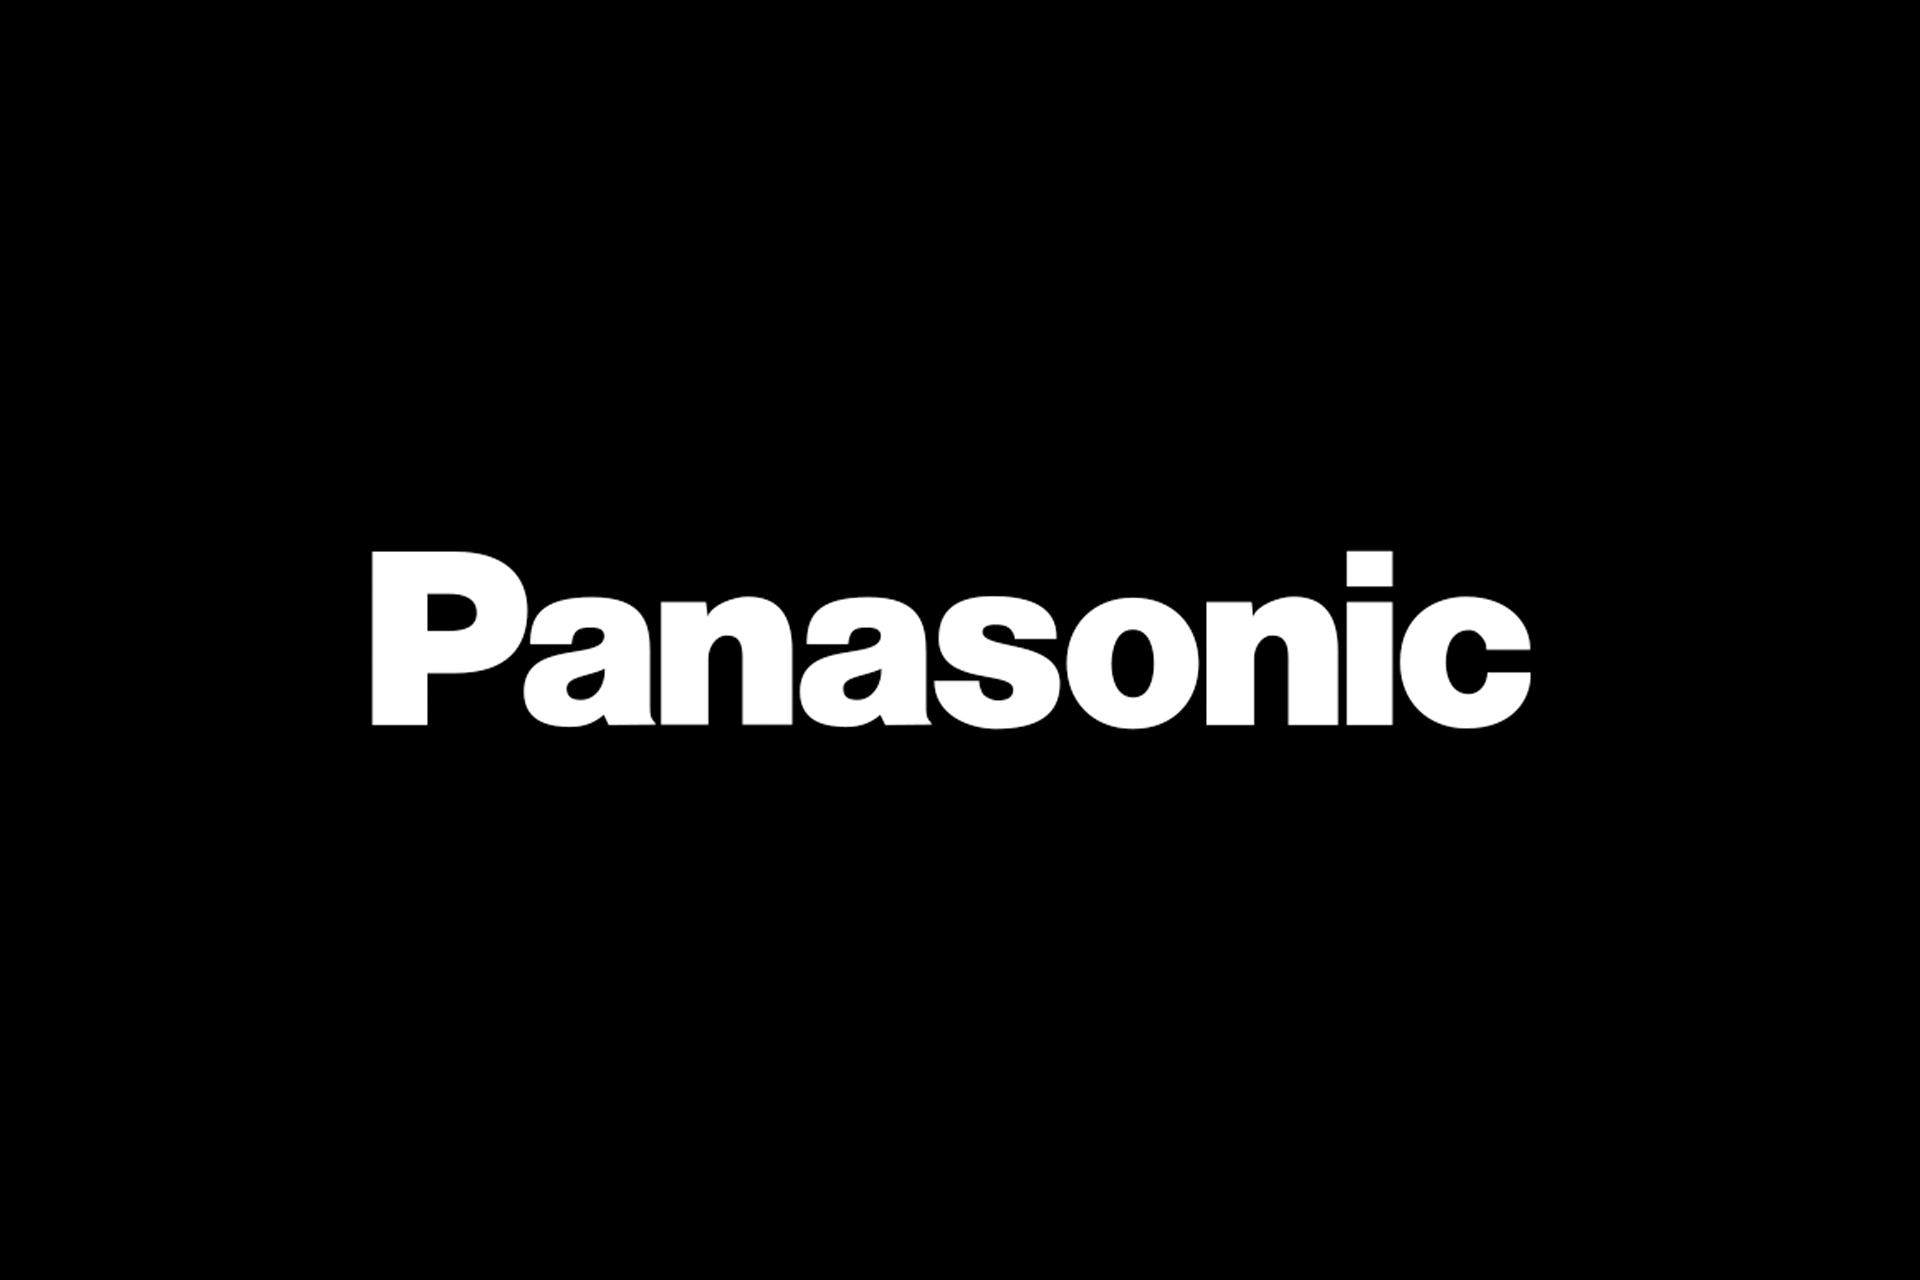 لوگو پاناسونیک / Panasonic در پس زمینه مشکی